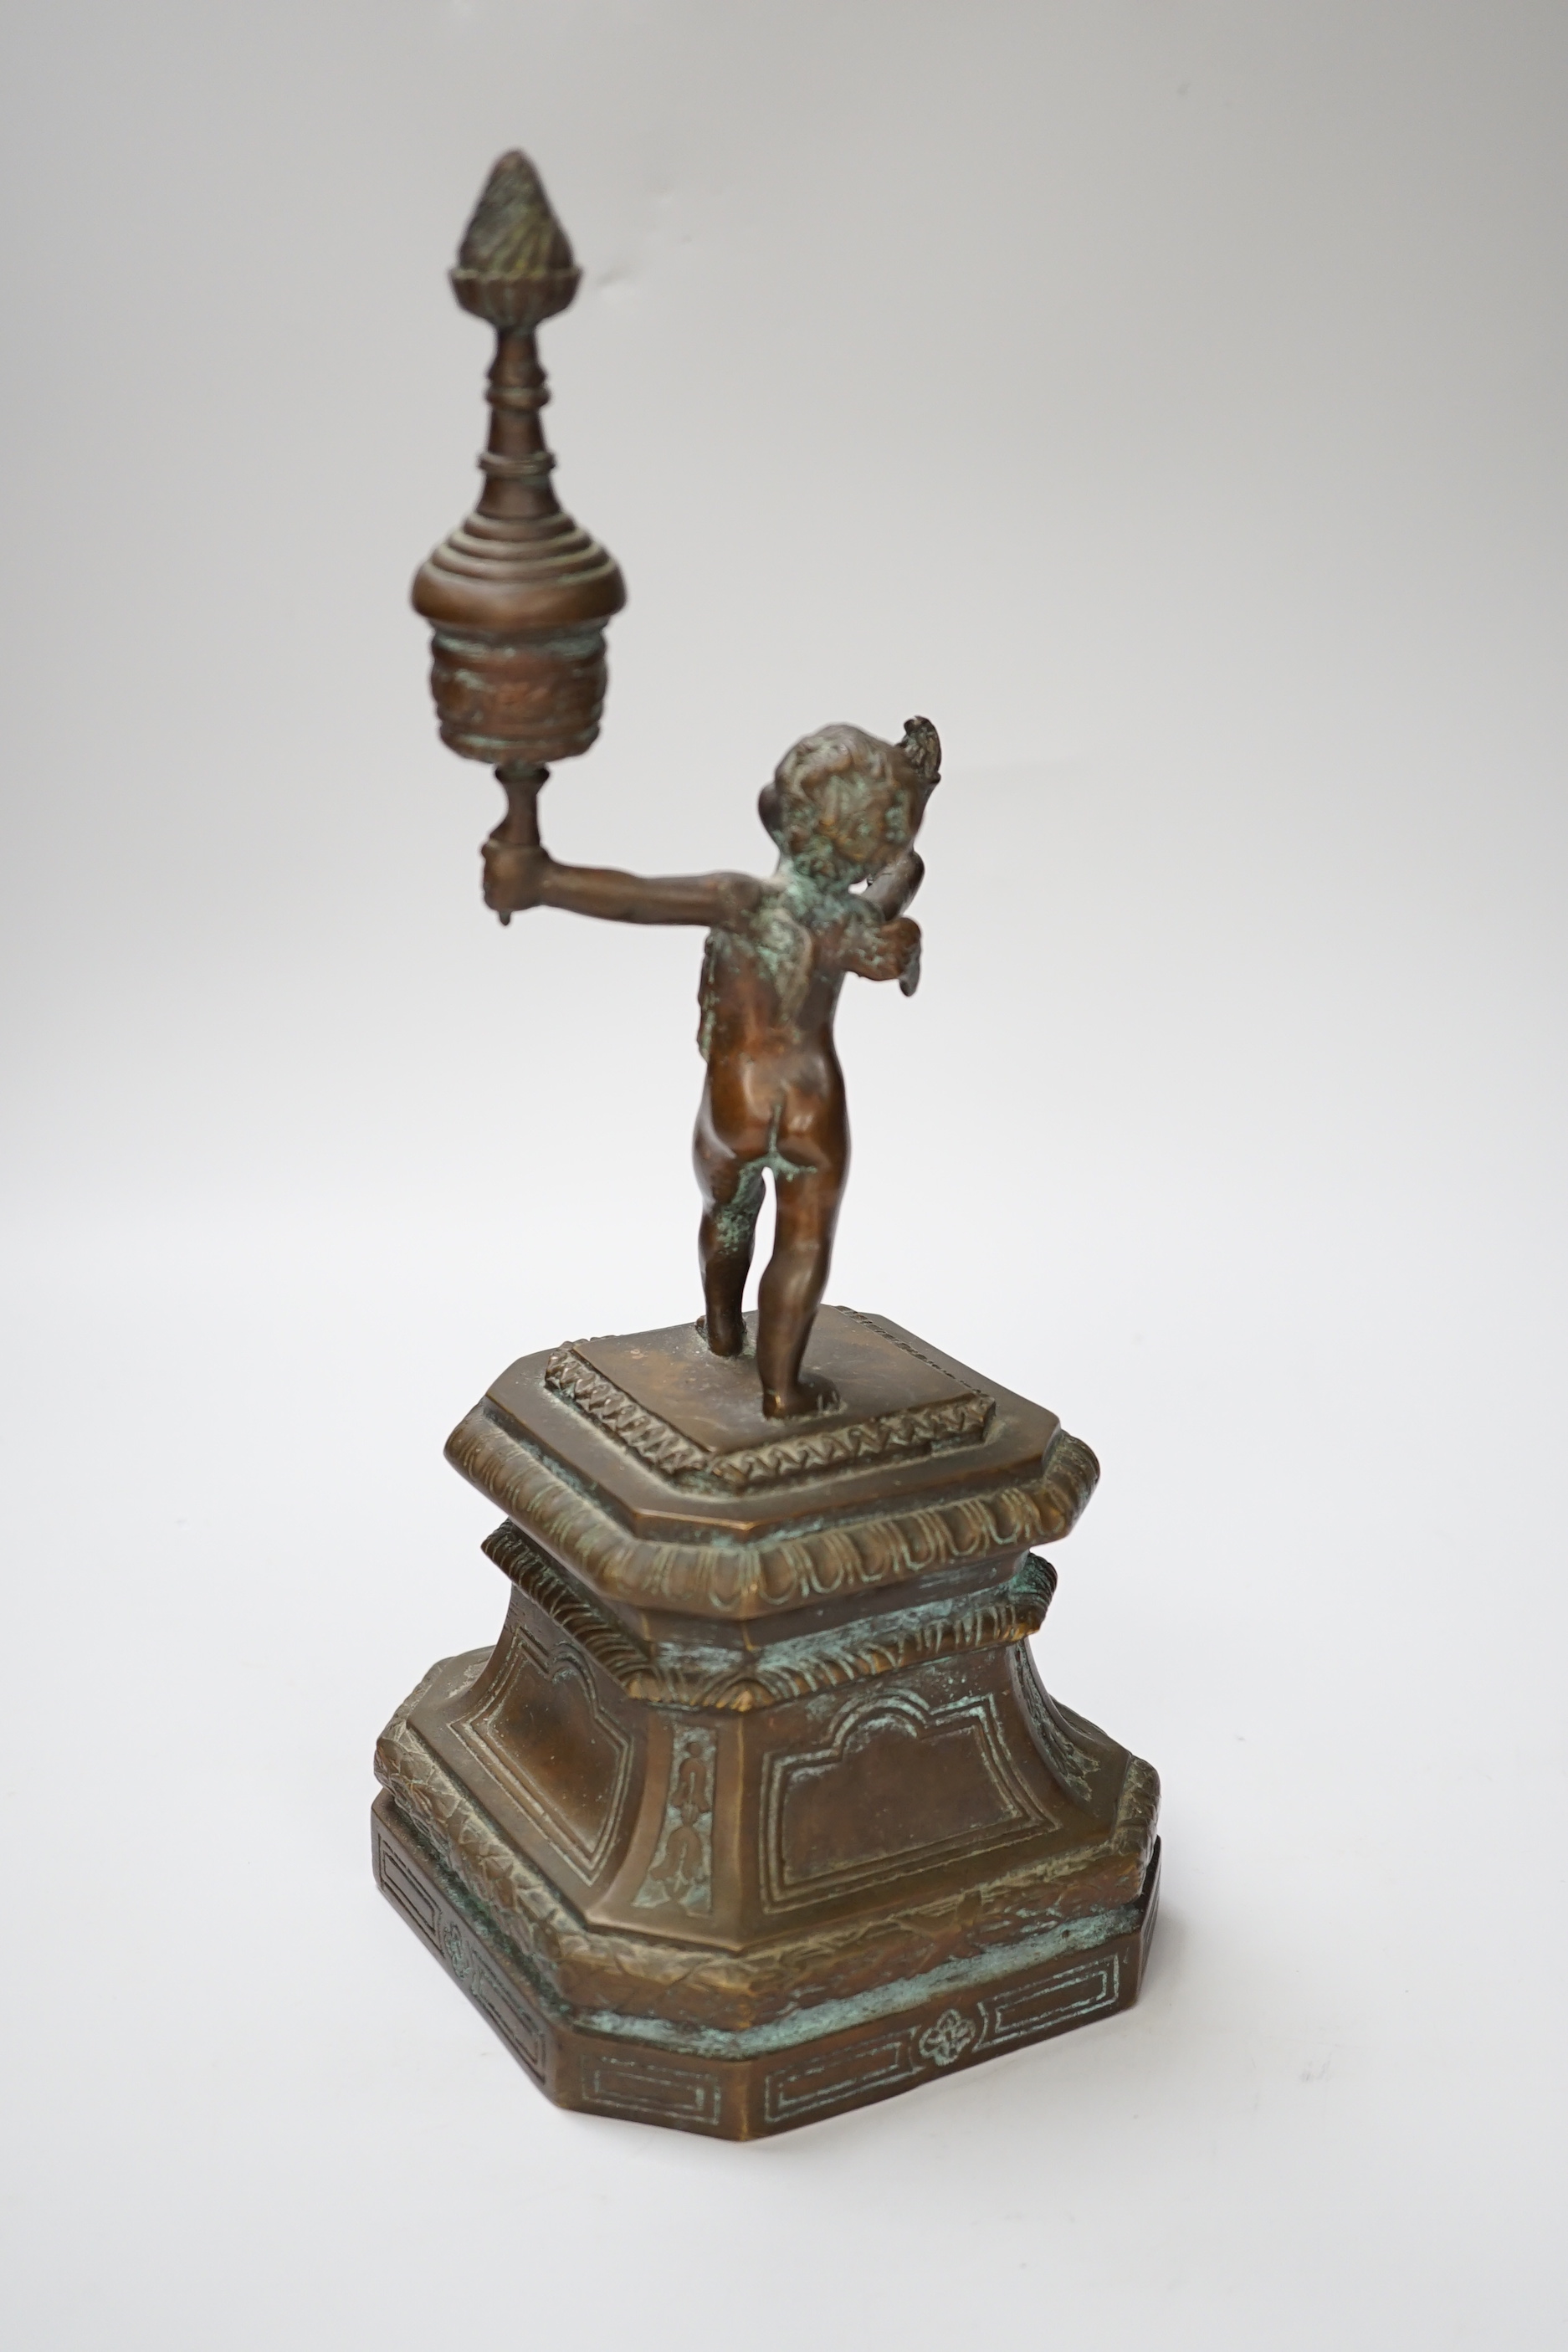 A bronze figure of a cherub, 30cm